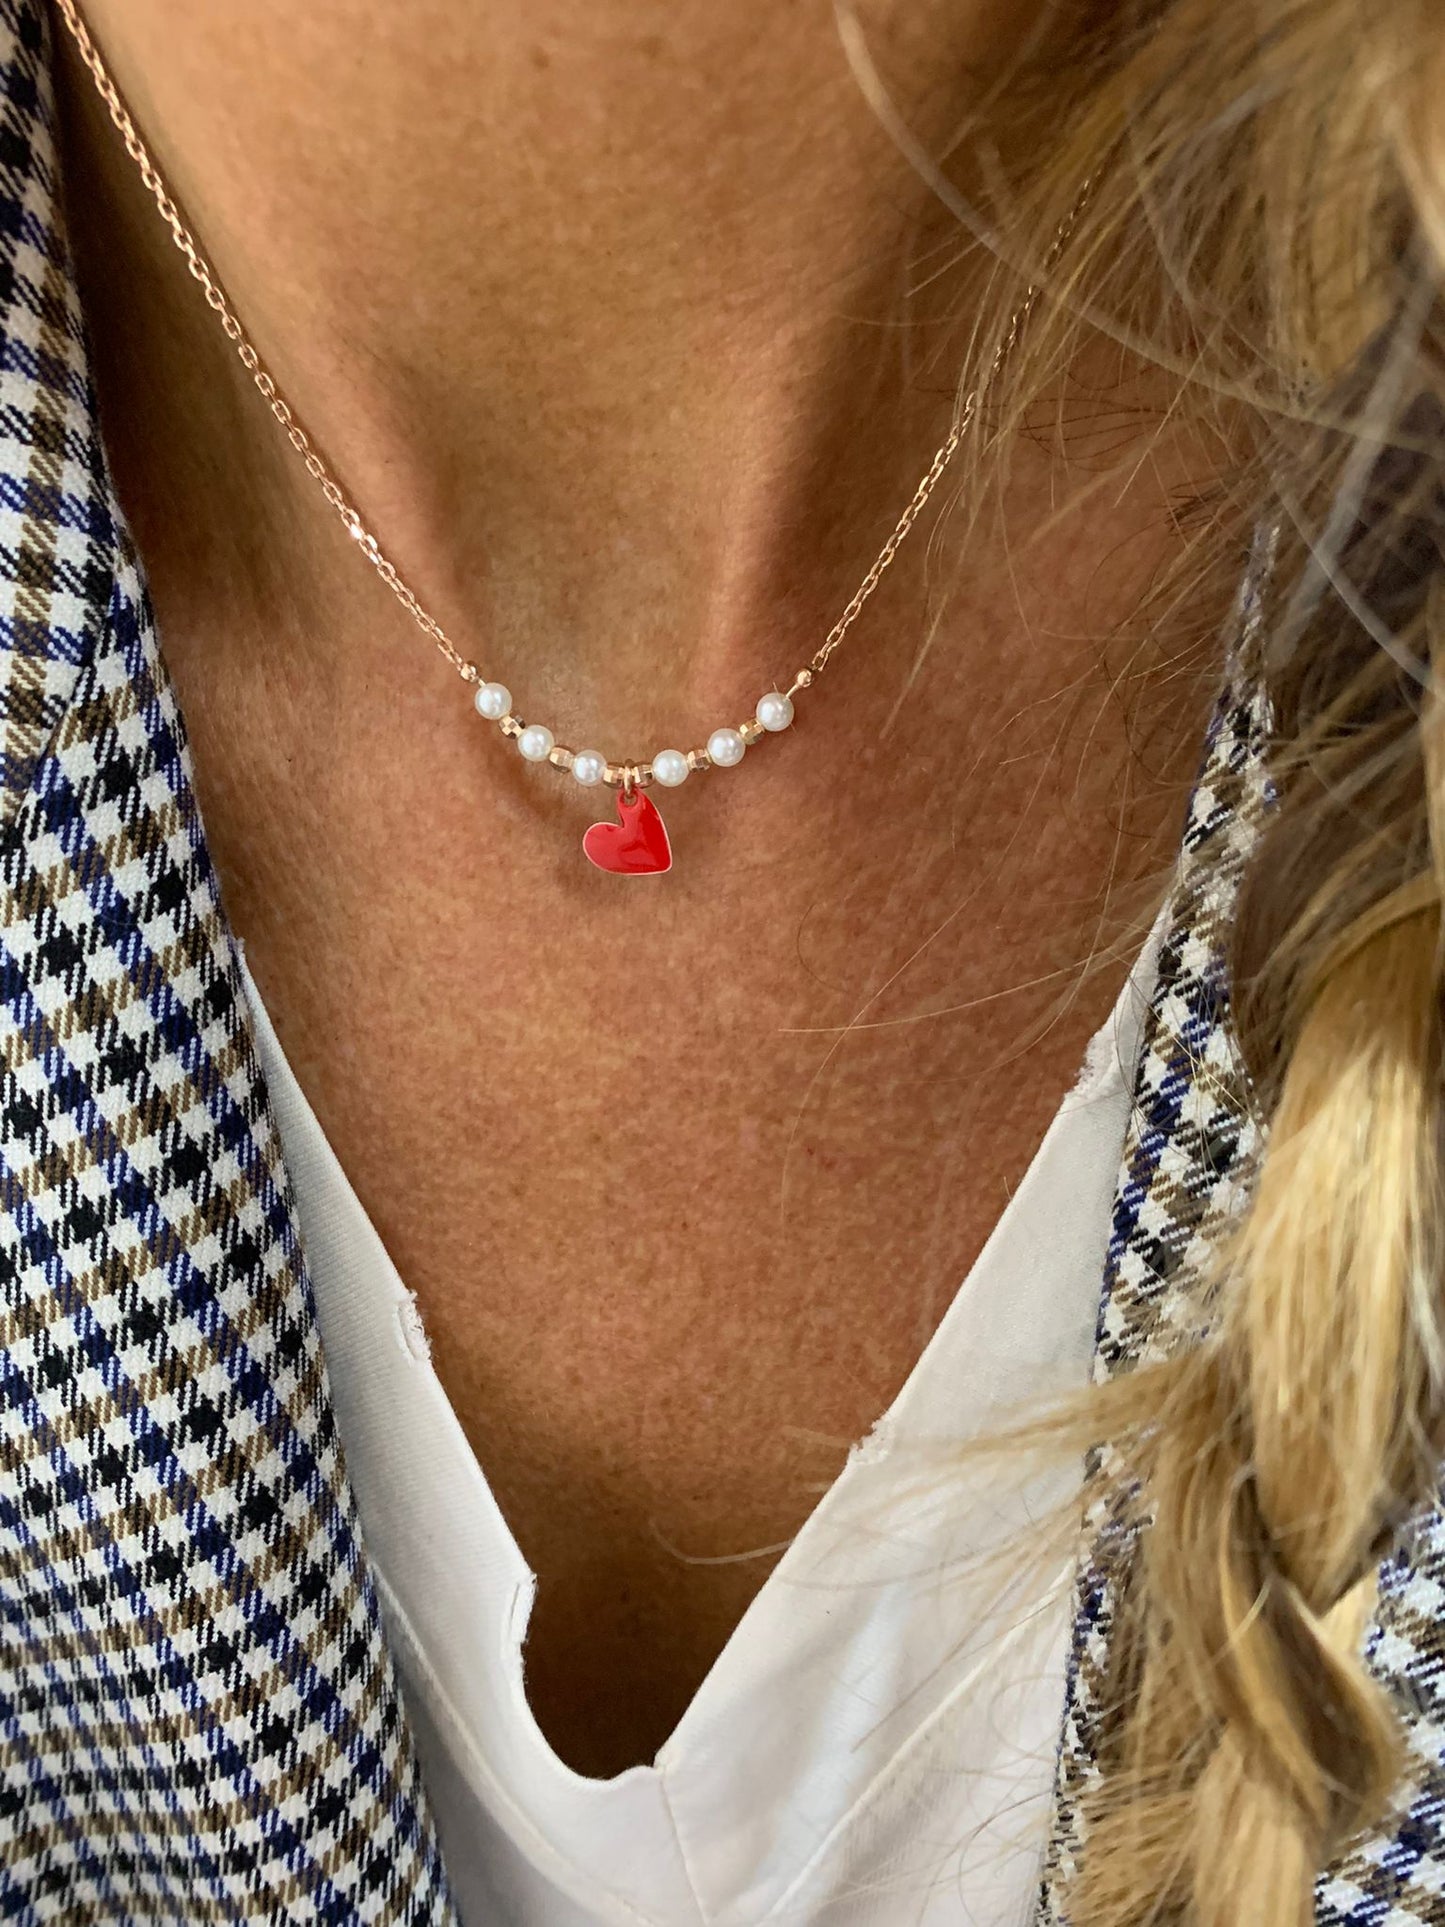 Collana choker barretta mezzaluna perle con catena rollò sottile con un cuore sweet smalto rosso da 0,8 mm bagnata in oro rosé - cm 36